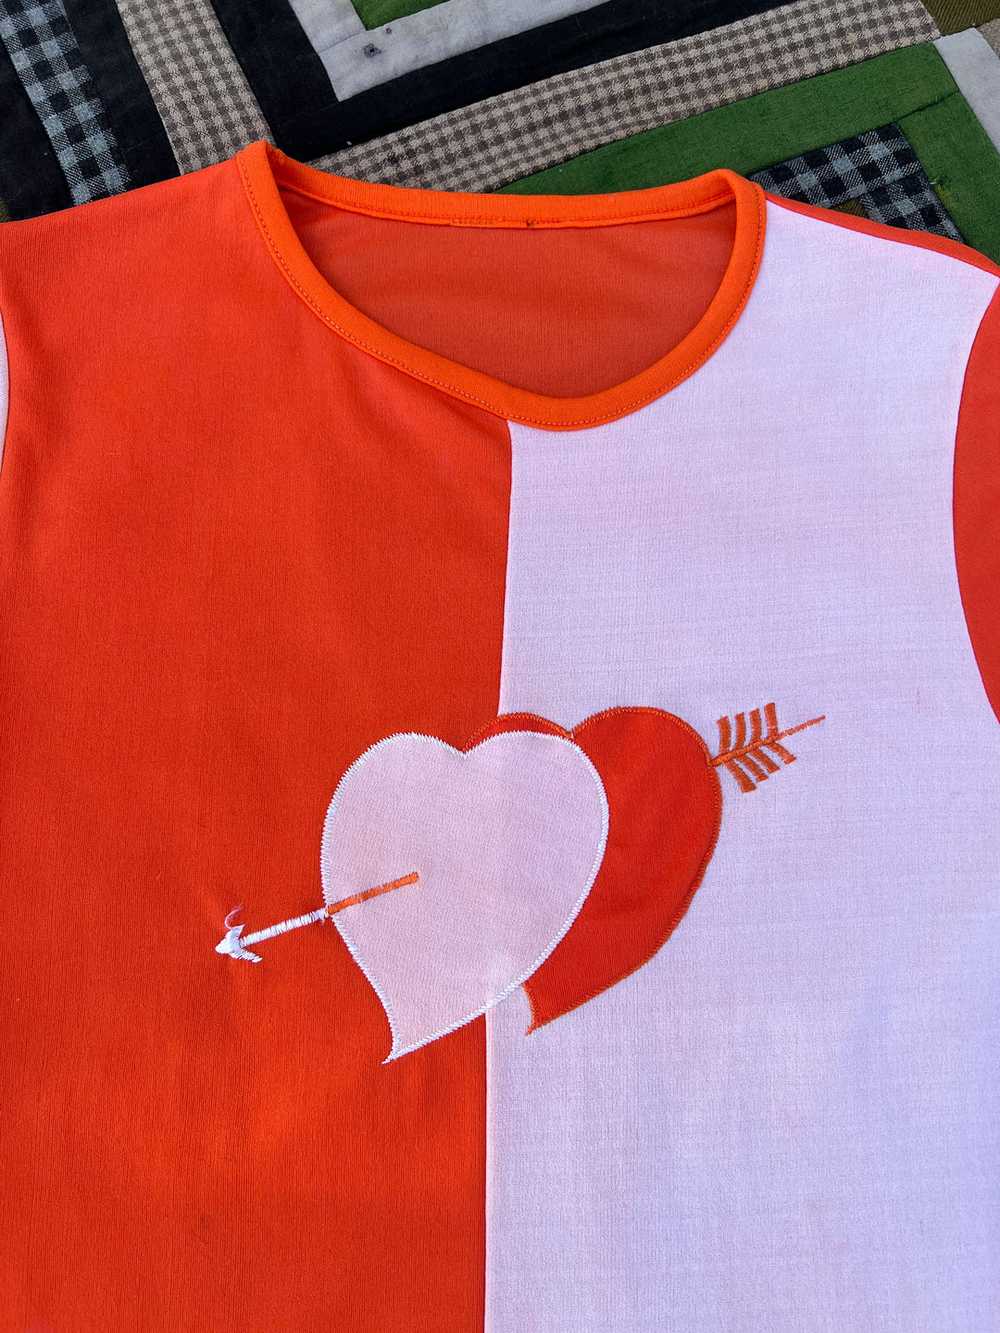 Vintage 1960's Orange and White Heart T-Shirt, Un… - image 2